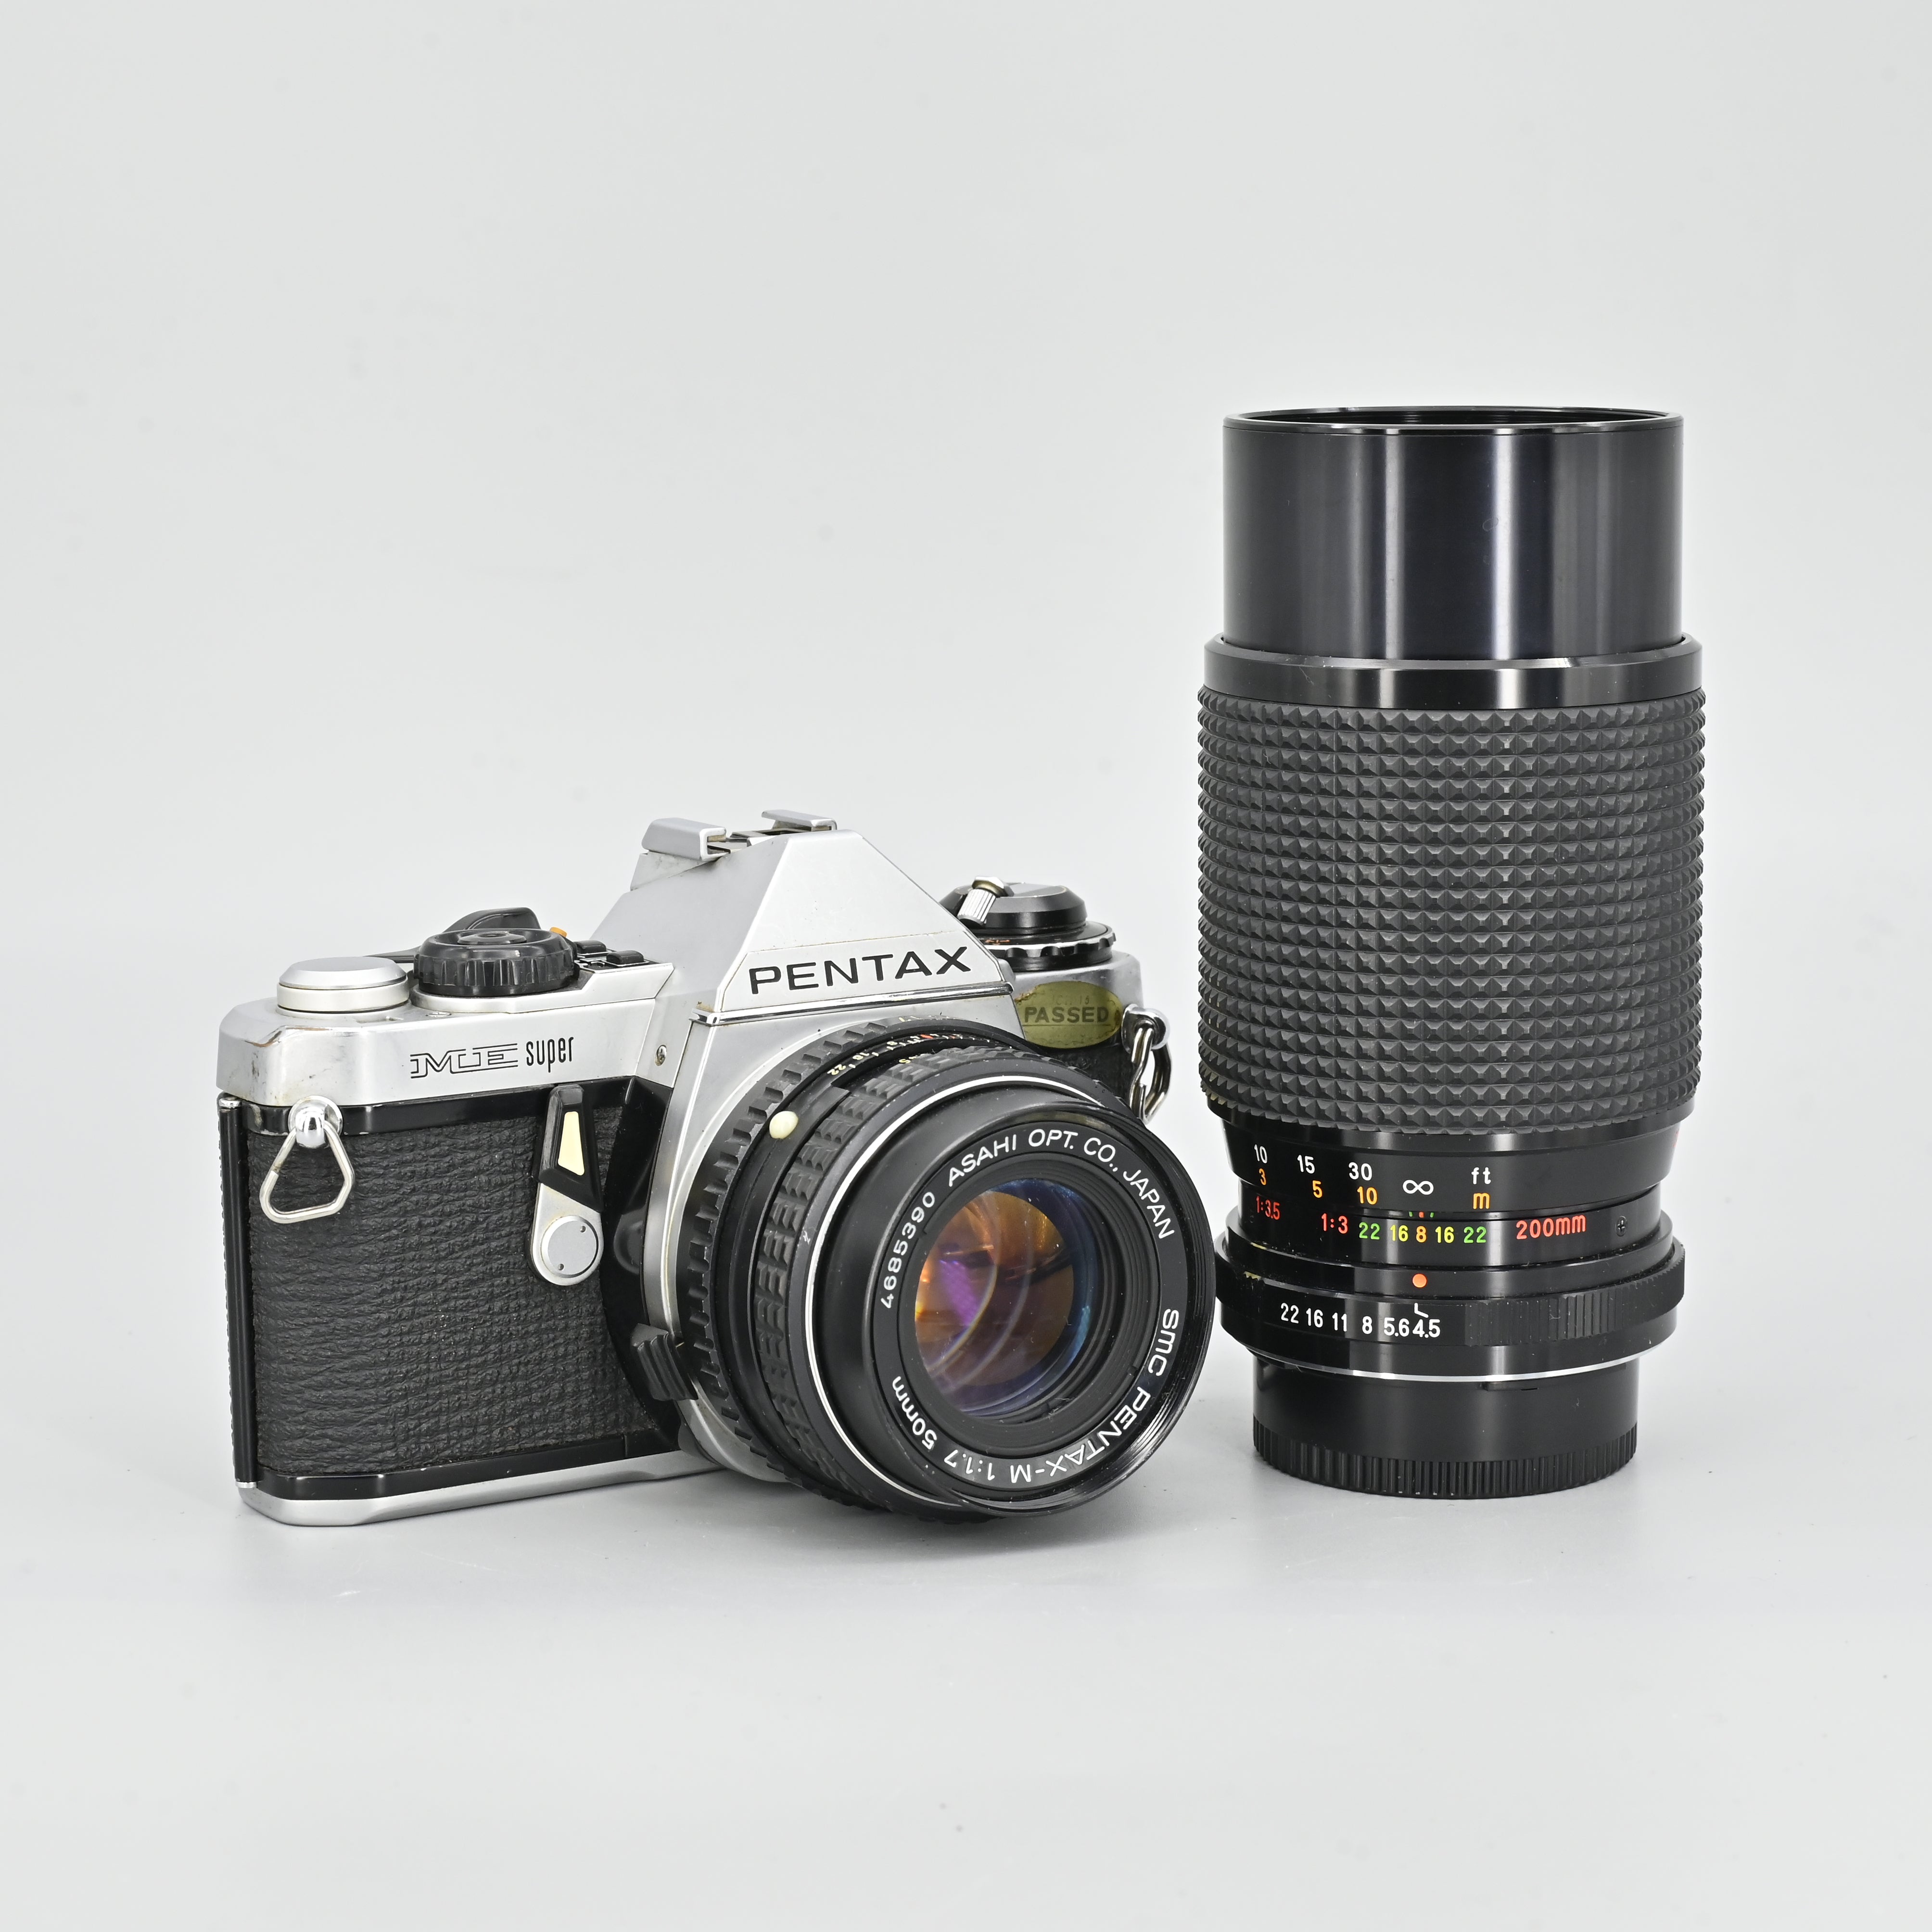 Pentax ME Super + SMC Pentax-M 50mm F1.7 Lens + Mitakon 80-200mm F4.5